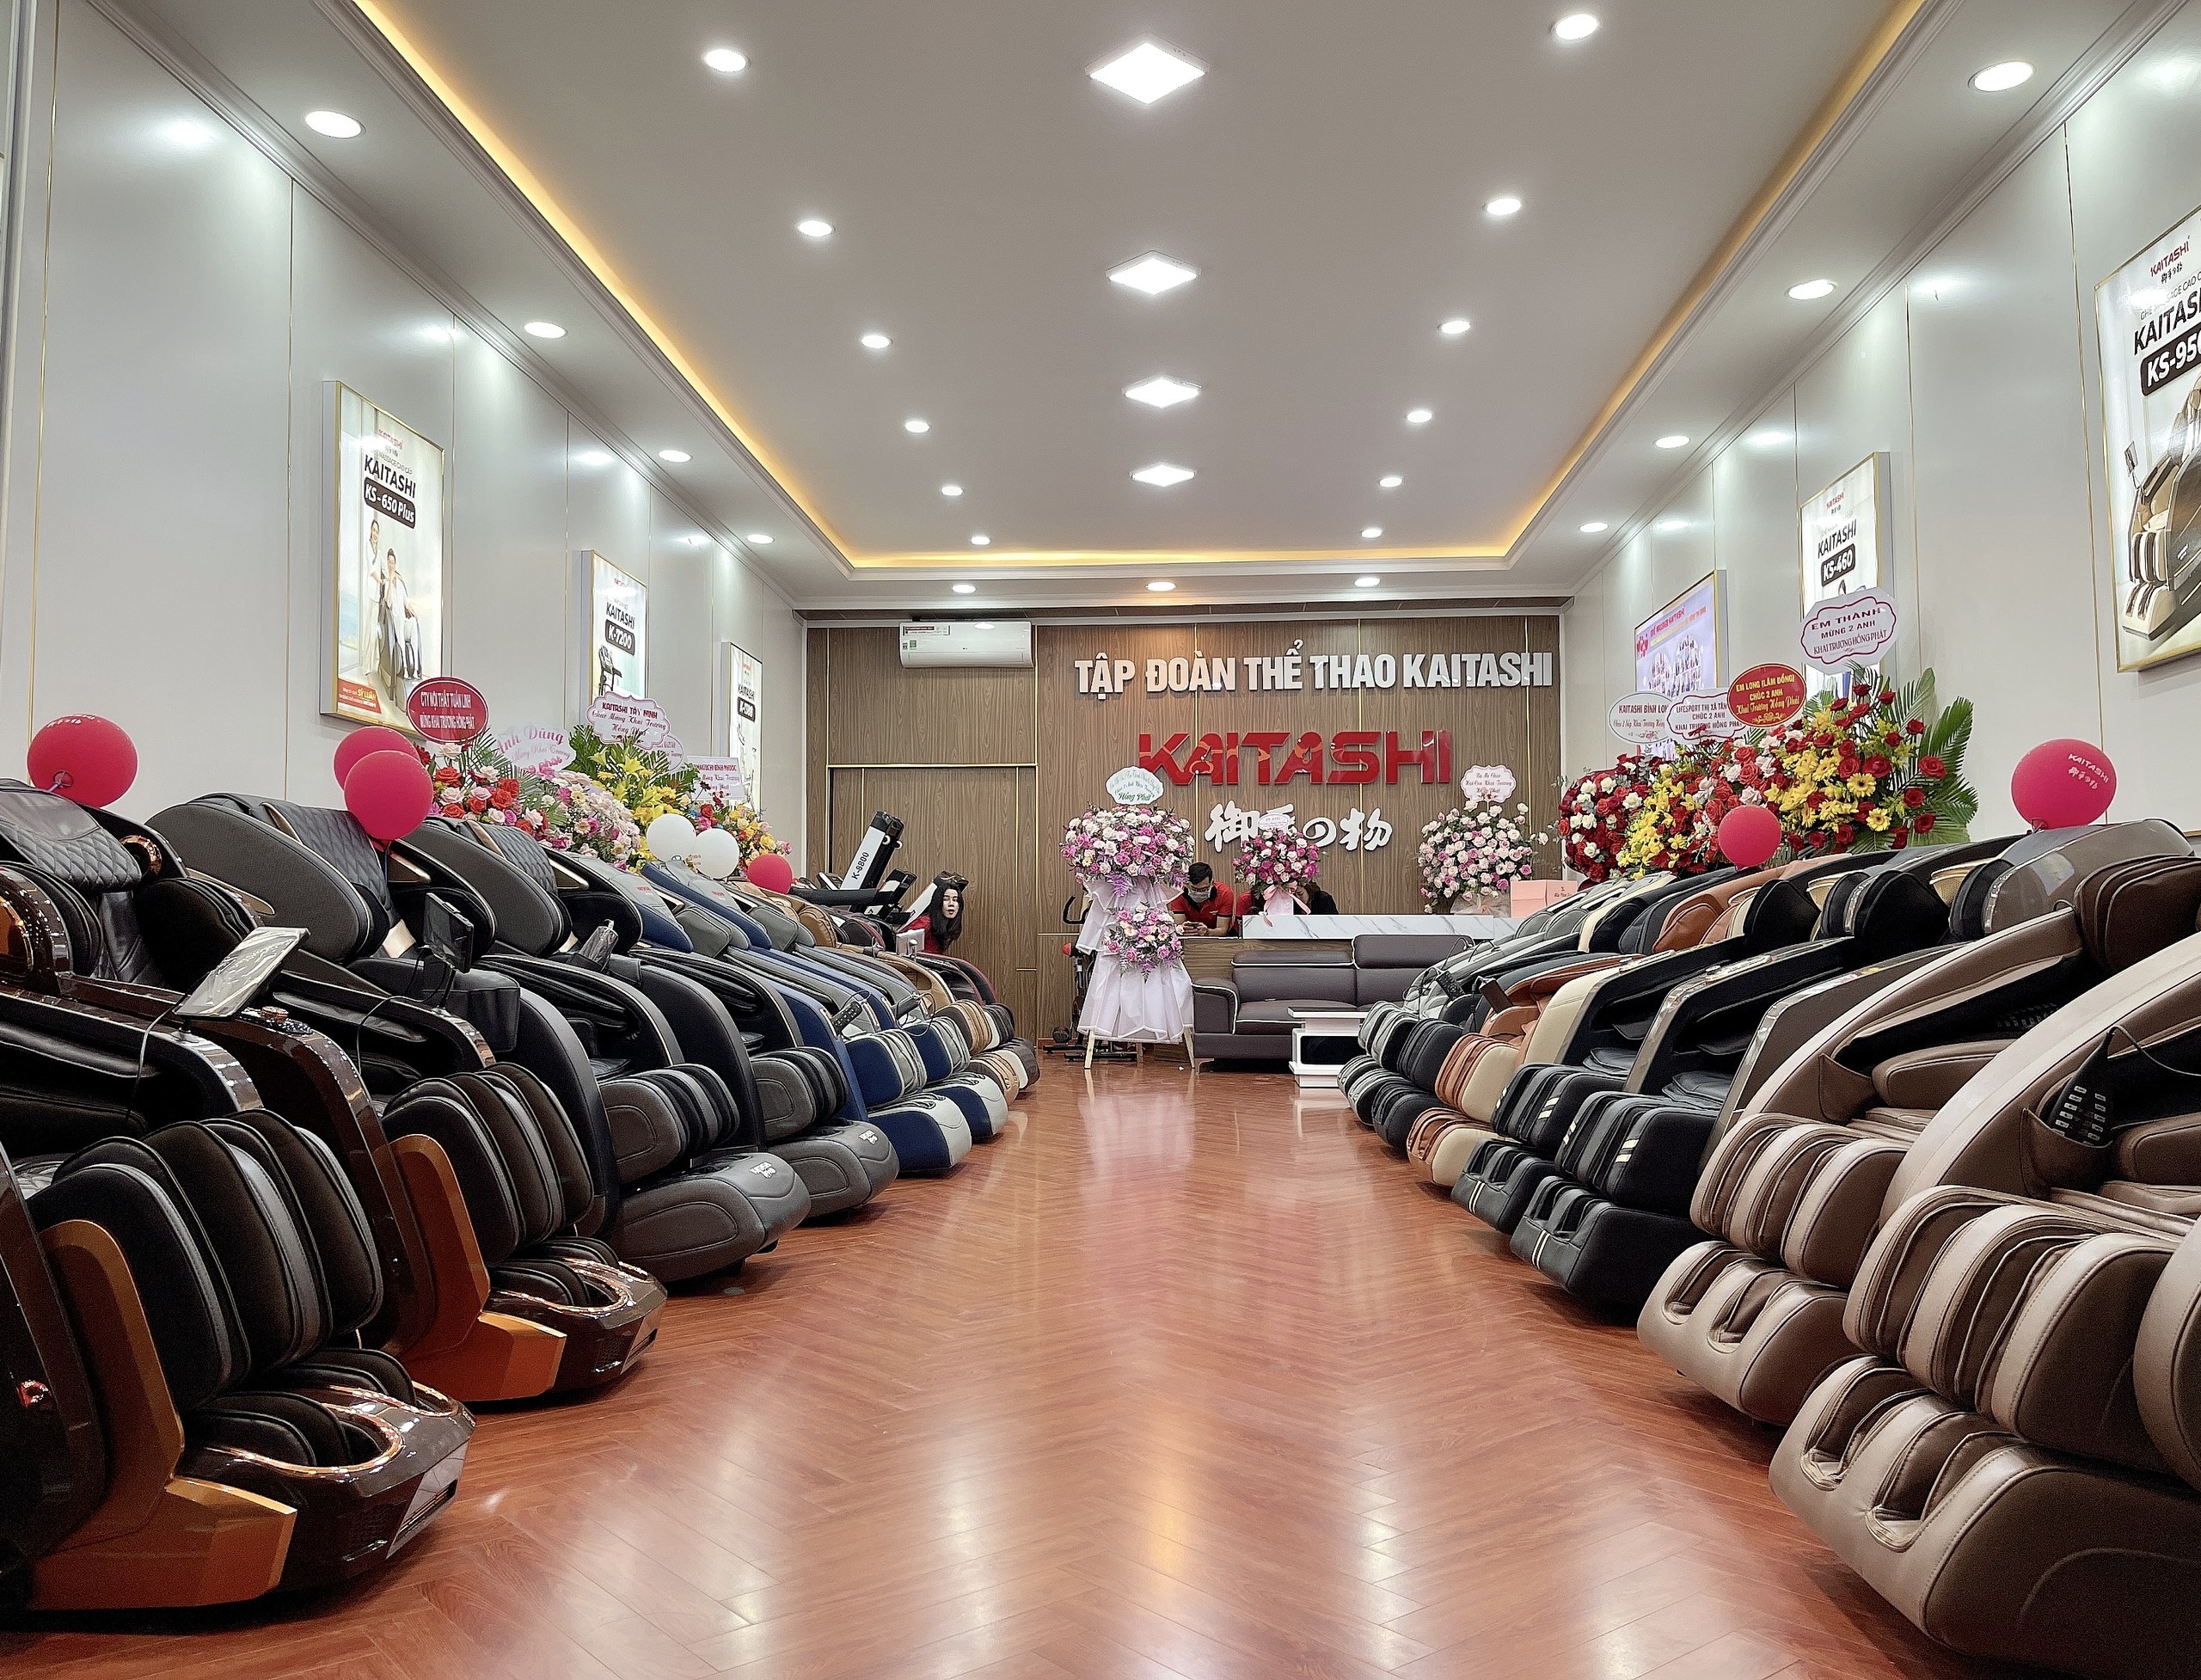 Cửa hàng bán máy chạy bộ tại Đắk Nông được nhiều khách hàng lựa chọn